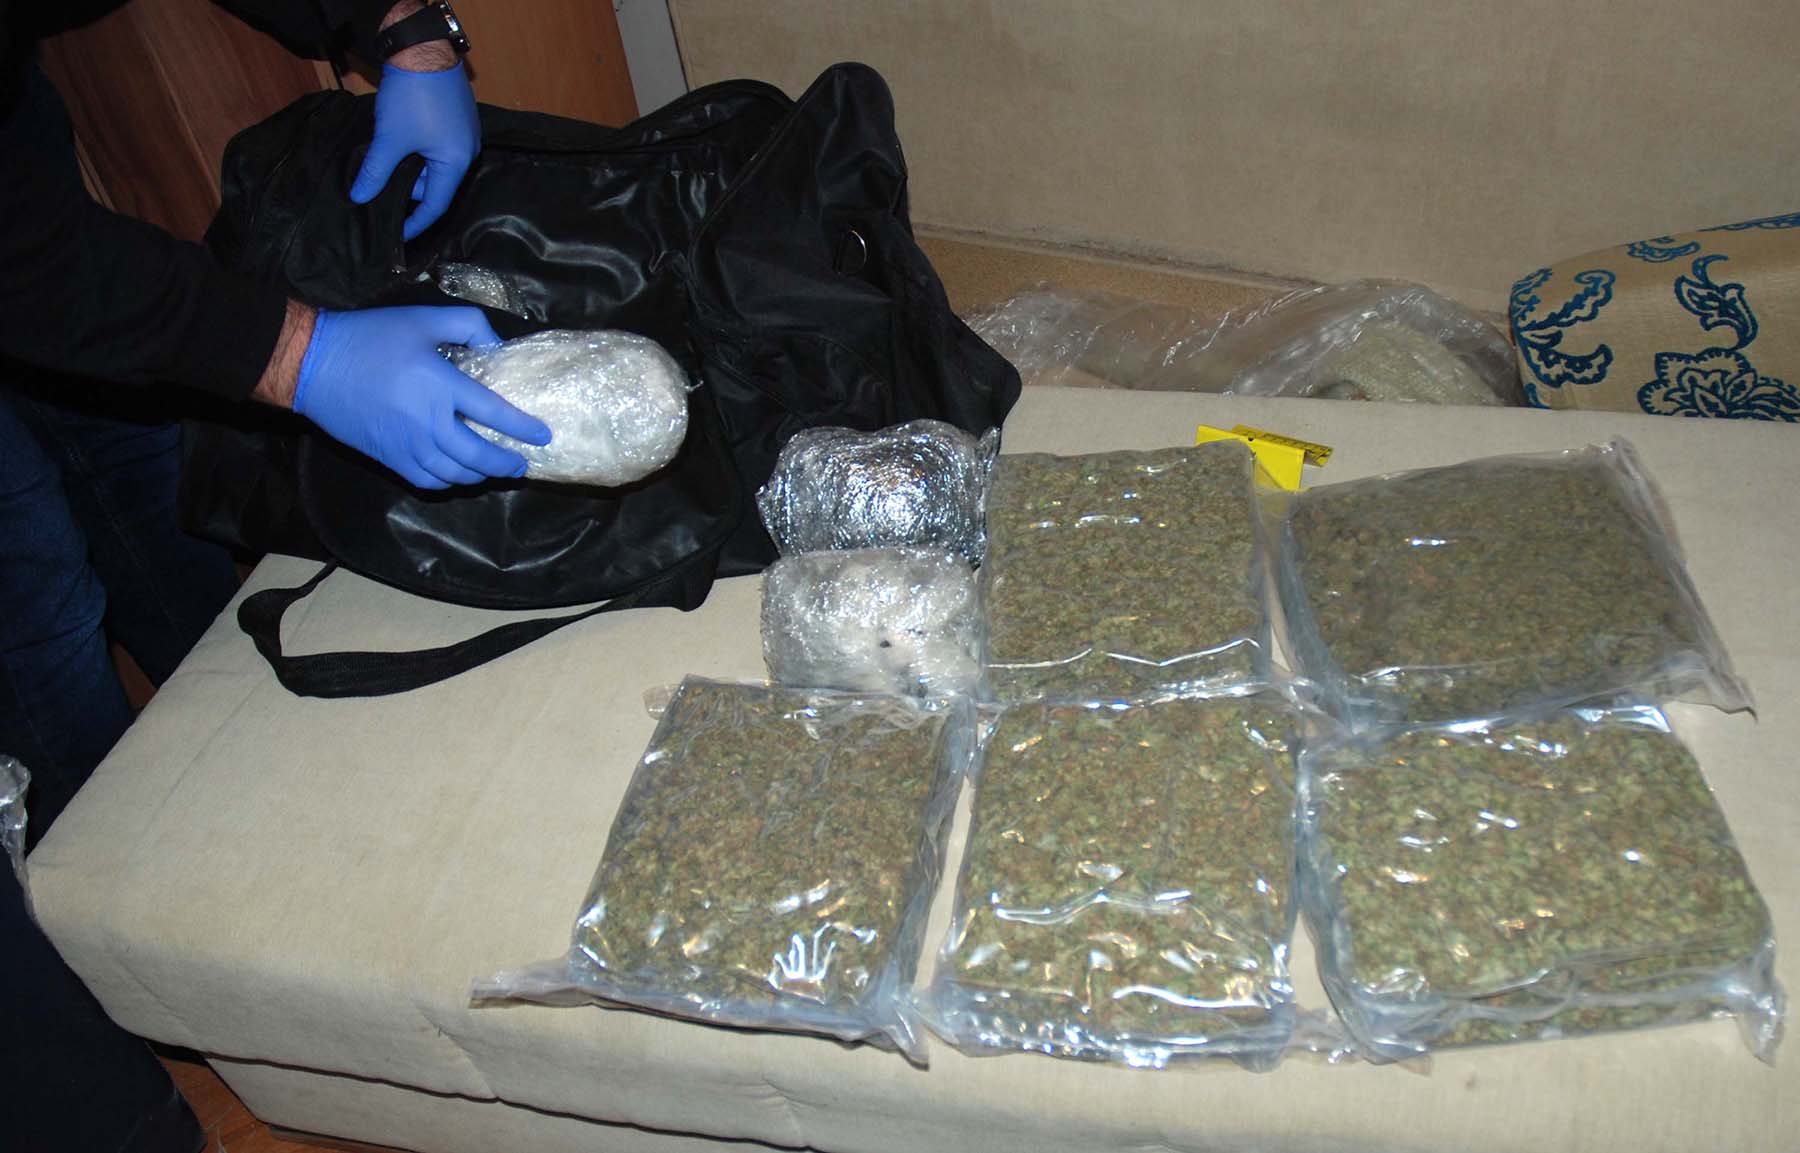 Zaplenjeno više od 3 kilograma marihuane i manja količina kokaina, uhapšen osumnjičeni